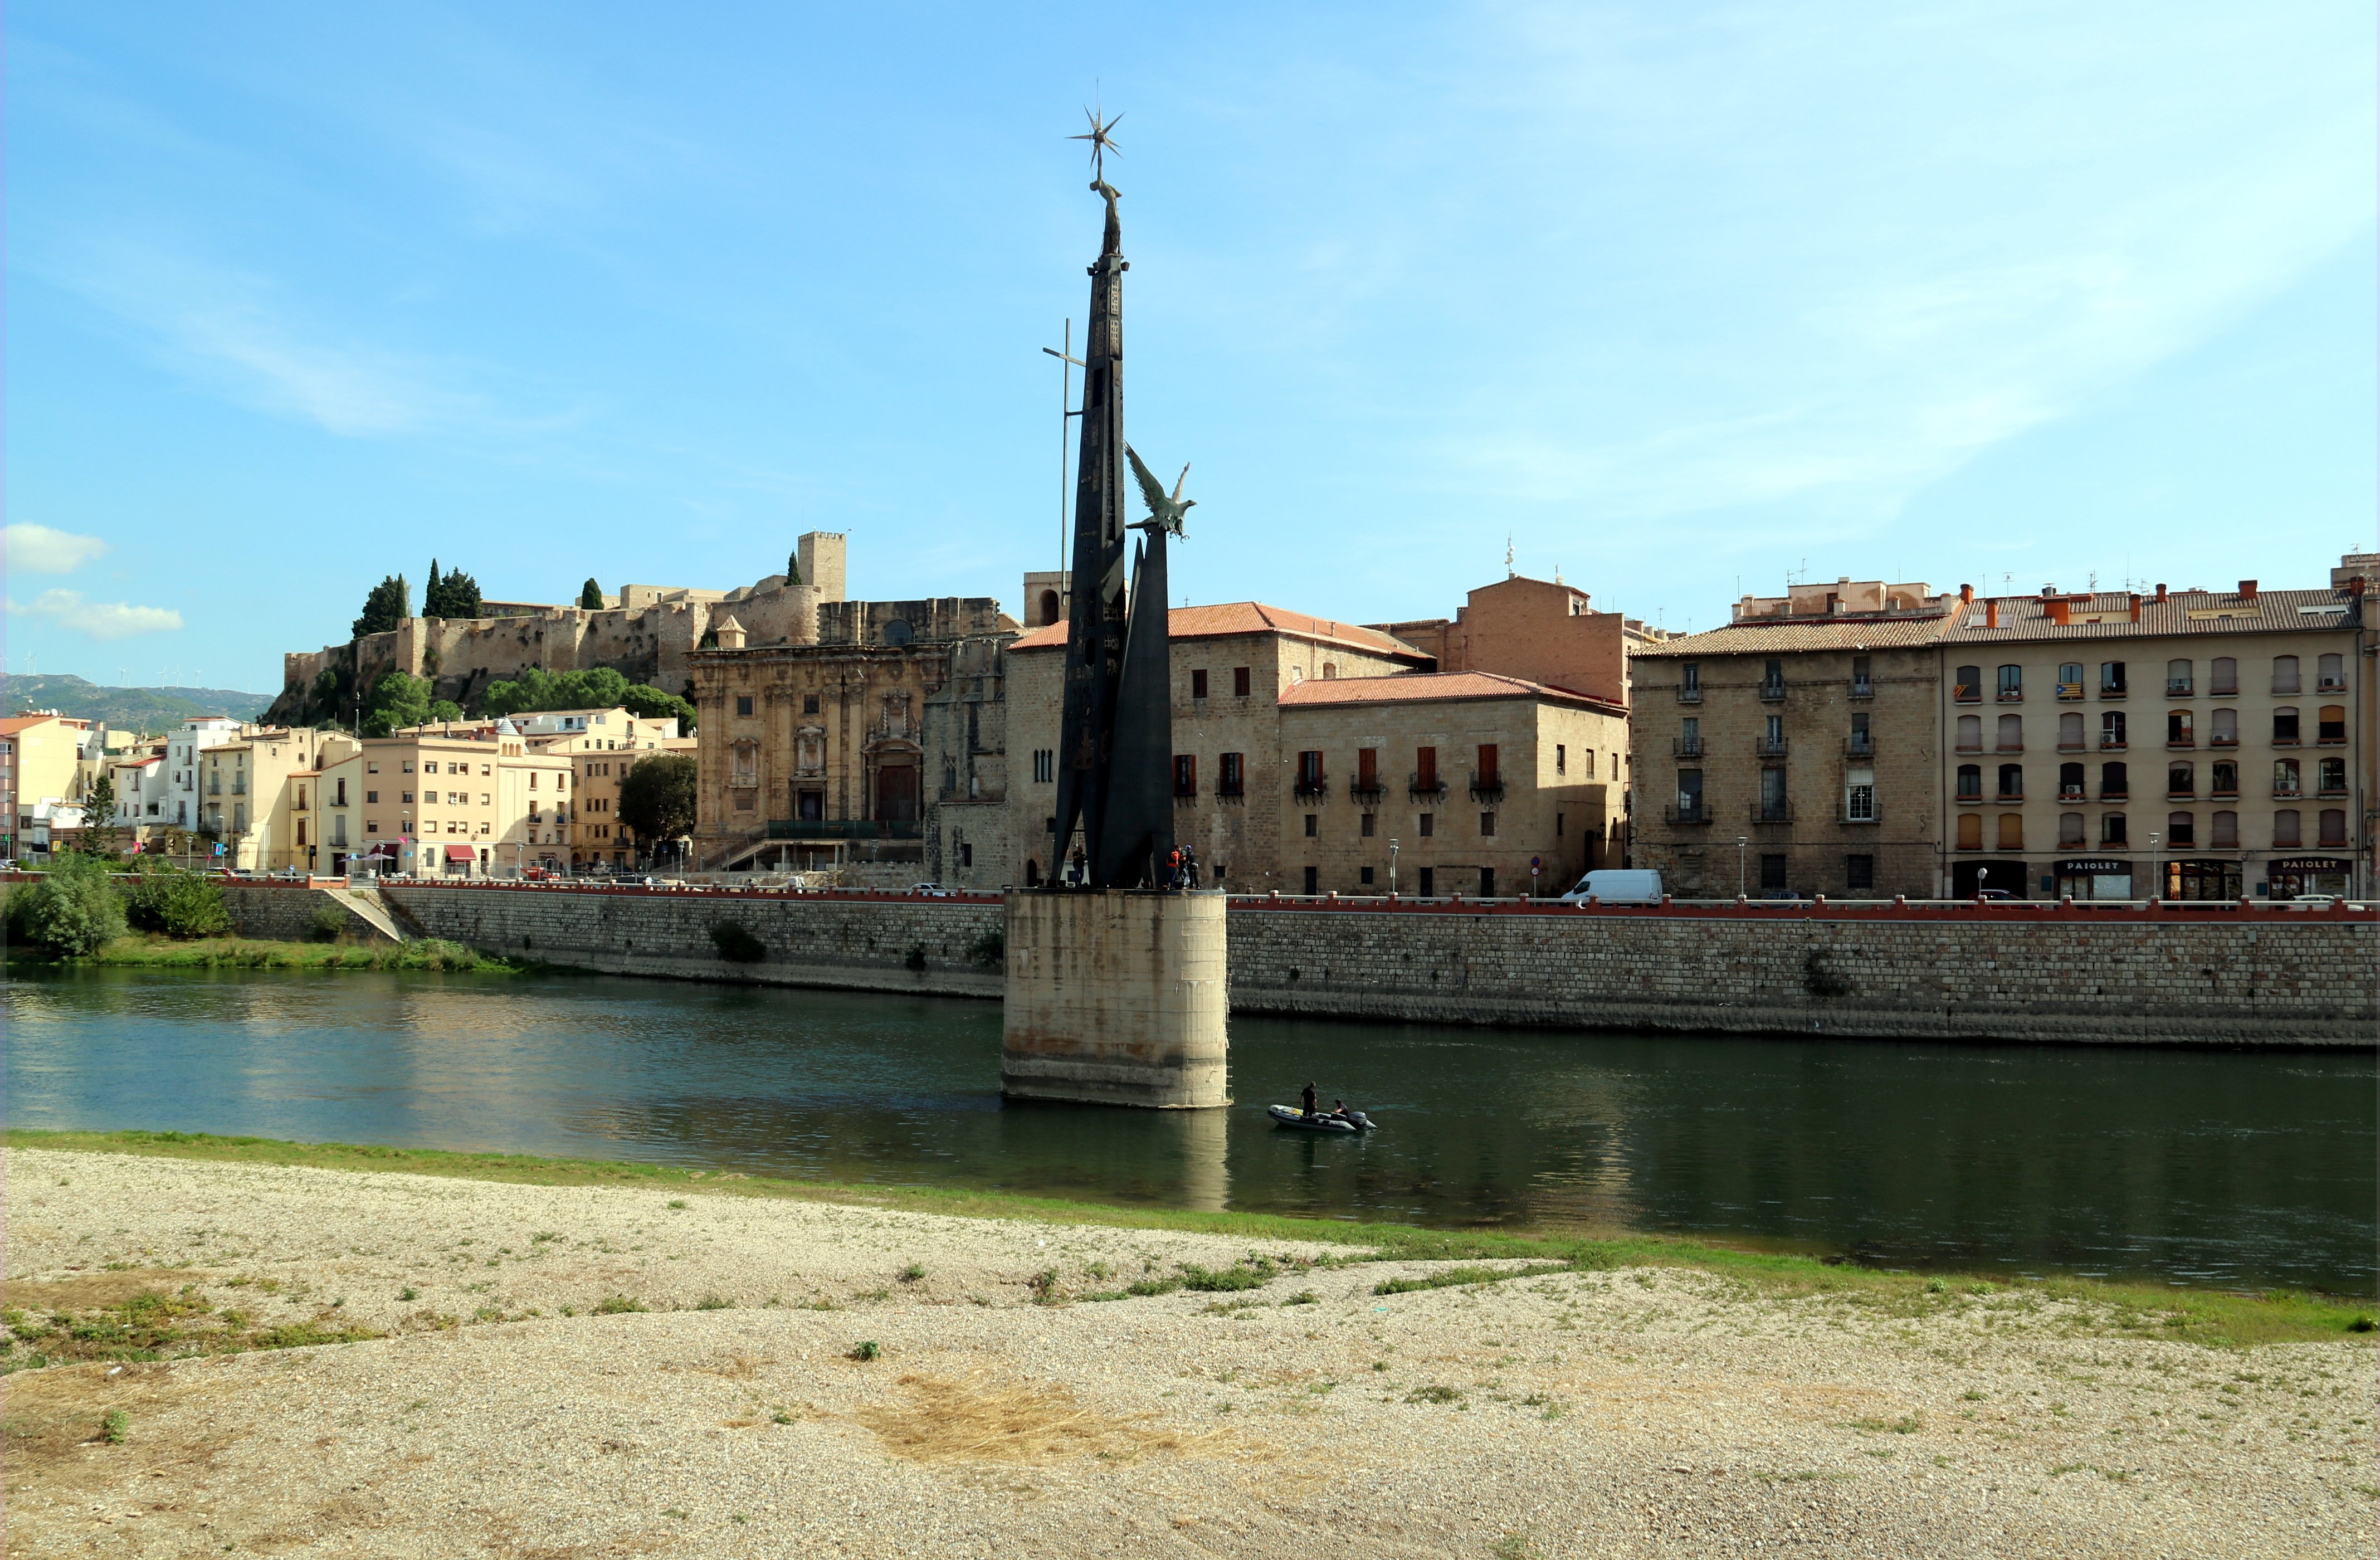 Justícia retirará el monumento franquista de Tortosa por la inacción española